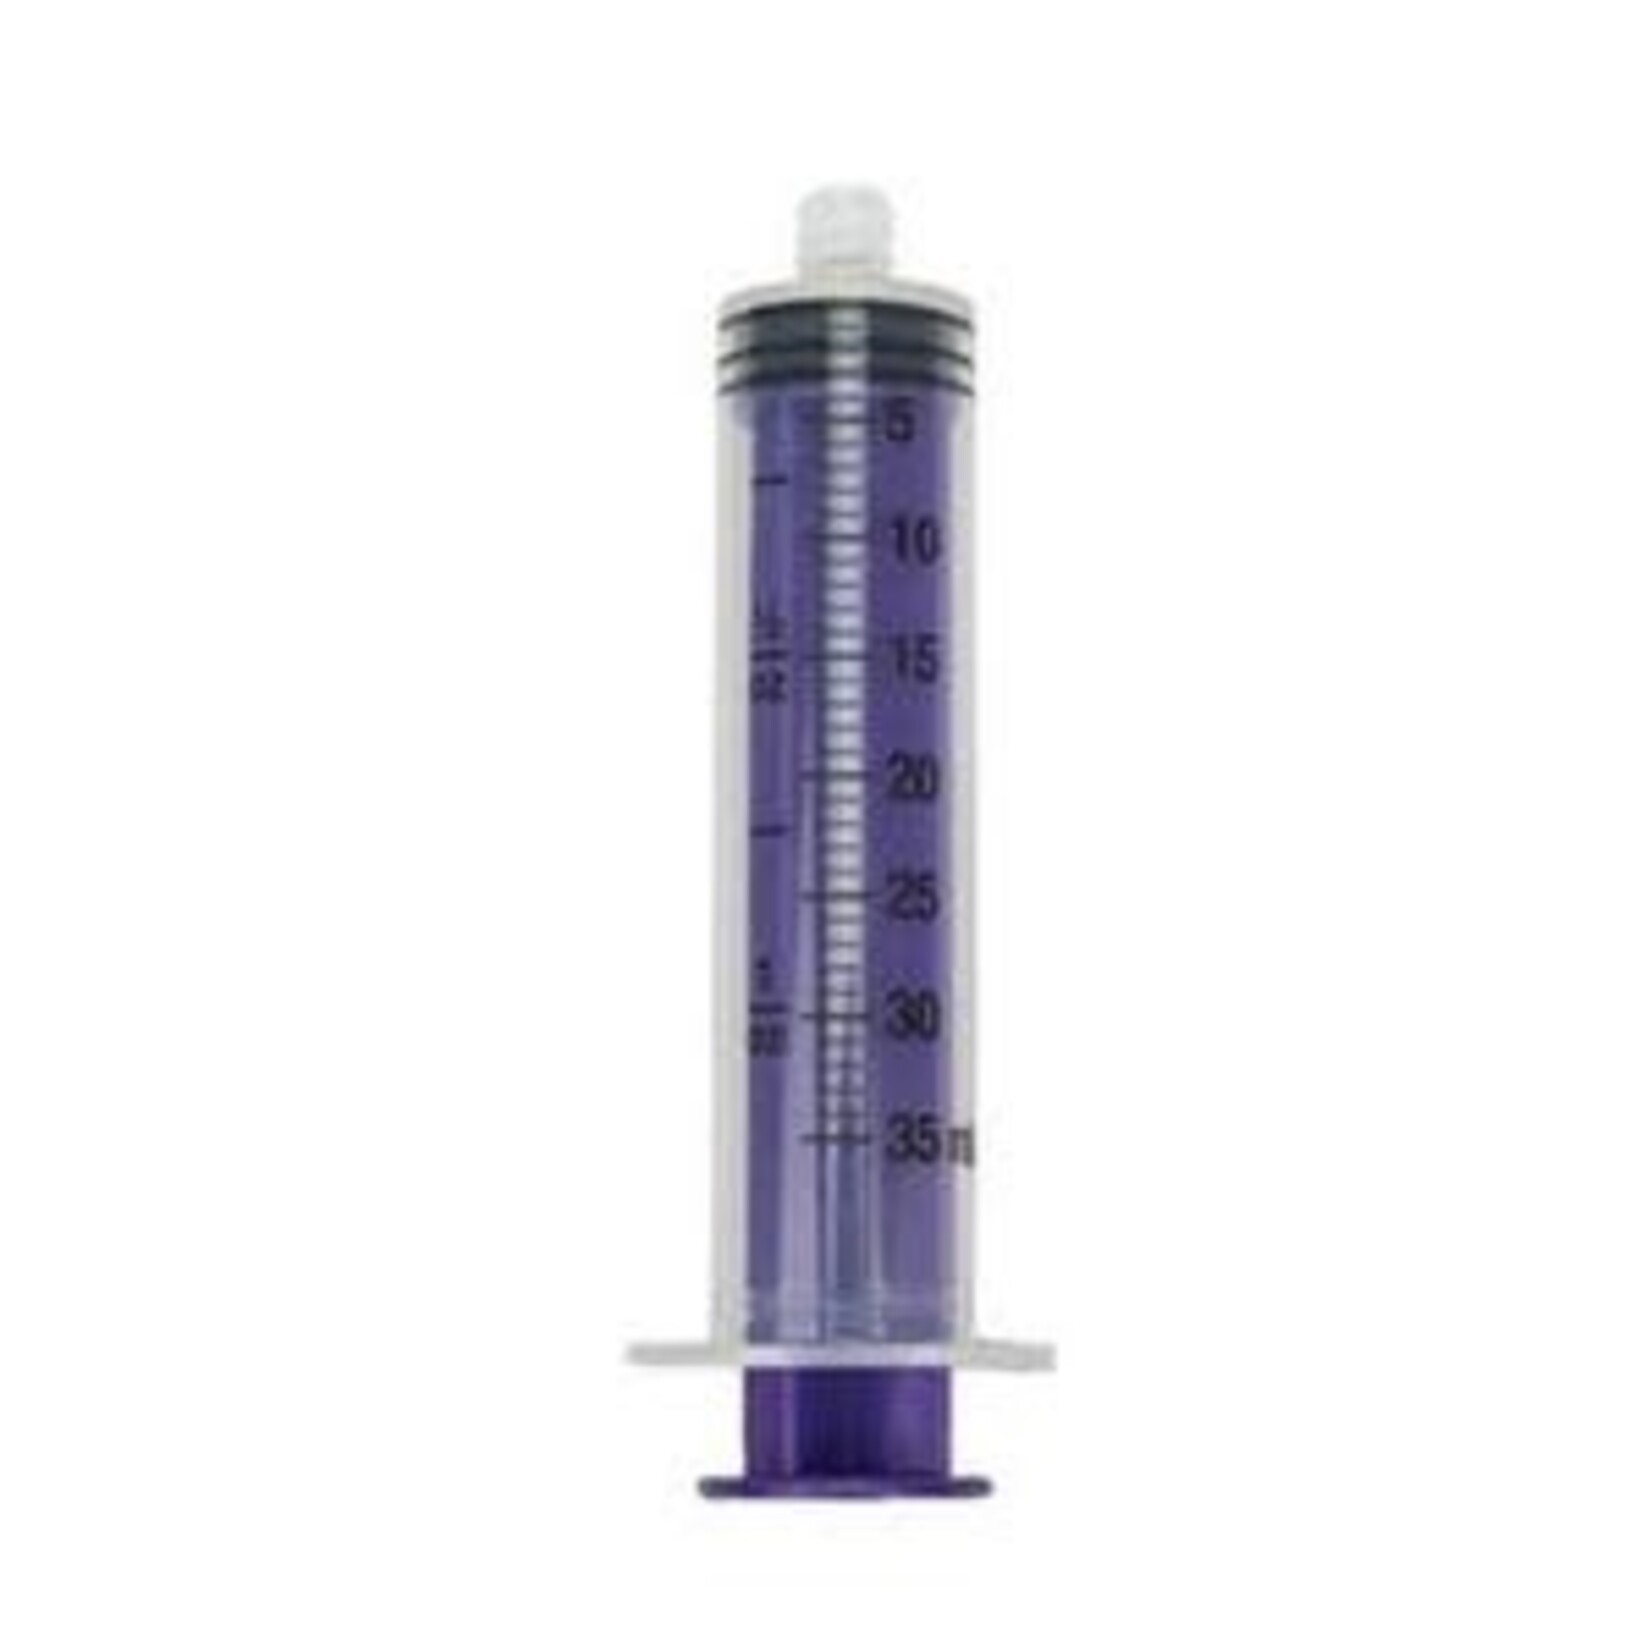 Vesco ENFit® Tip Medical Syringe, 35mL